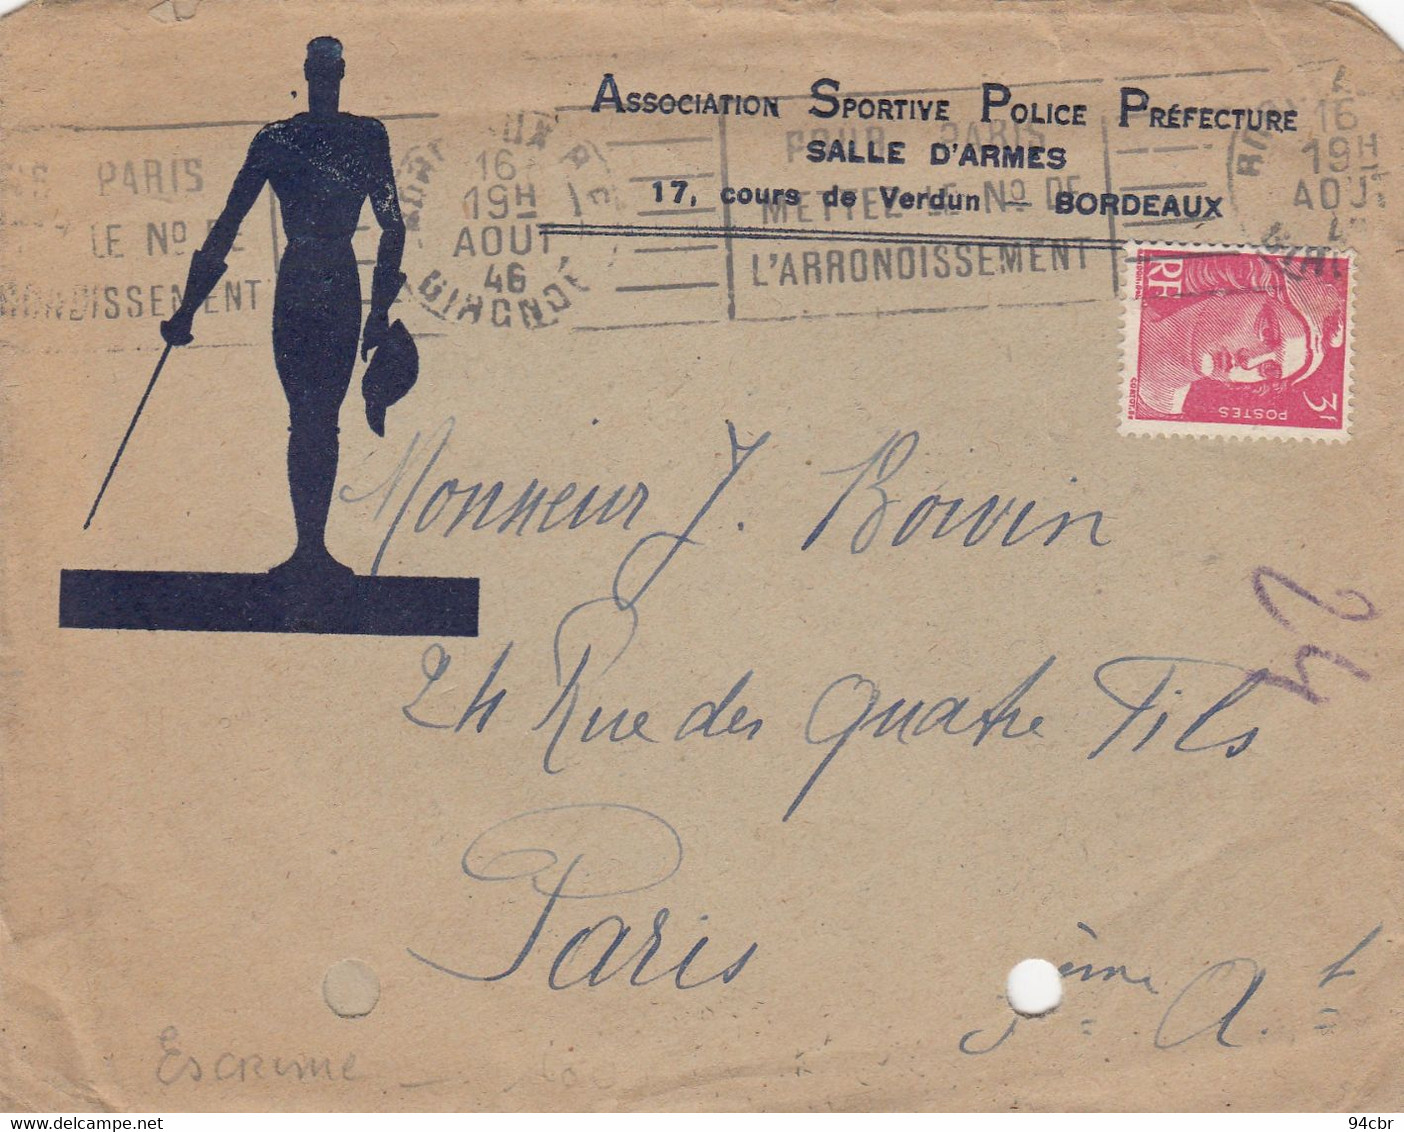 PHILATELIE (enveloppe)ESCRIME  Association Sportive Police  Prefecture  (salle D Armes)(b Bur Theme) - Fencing